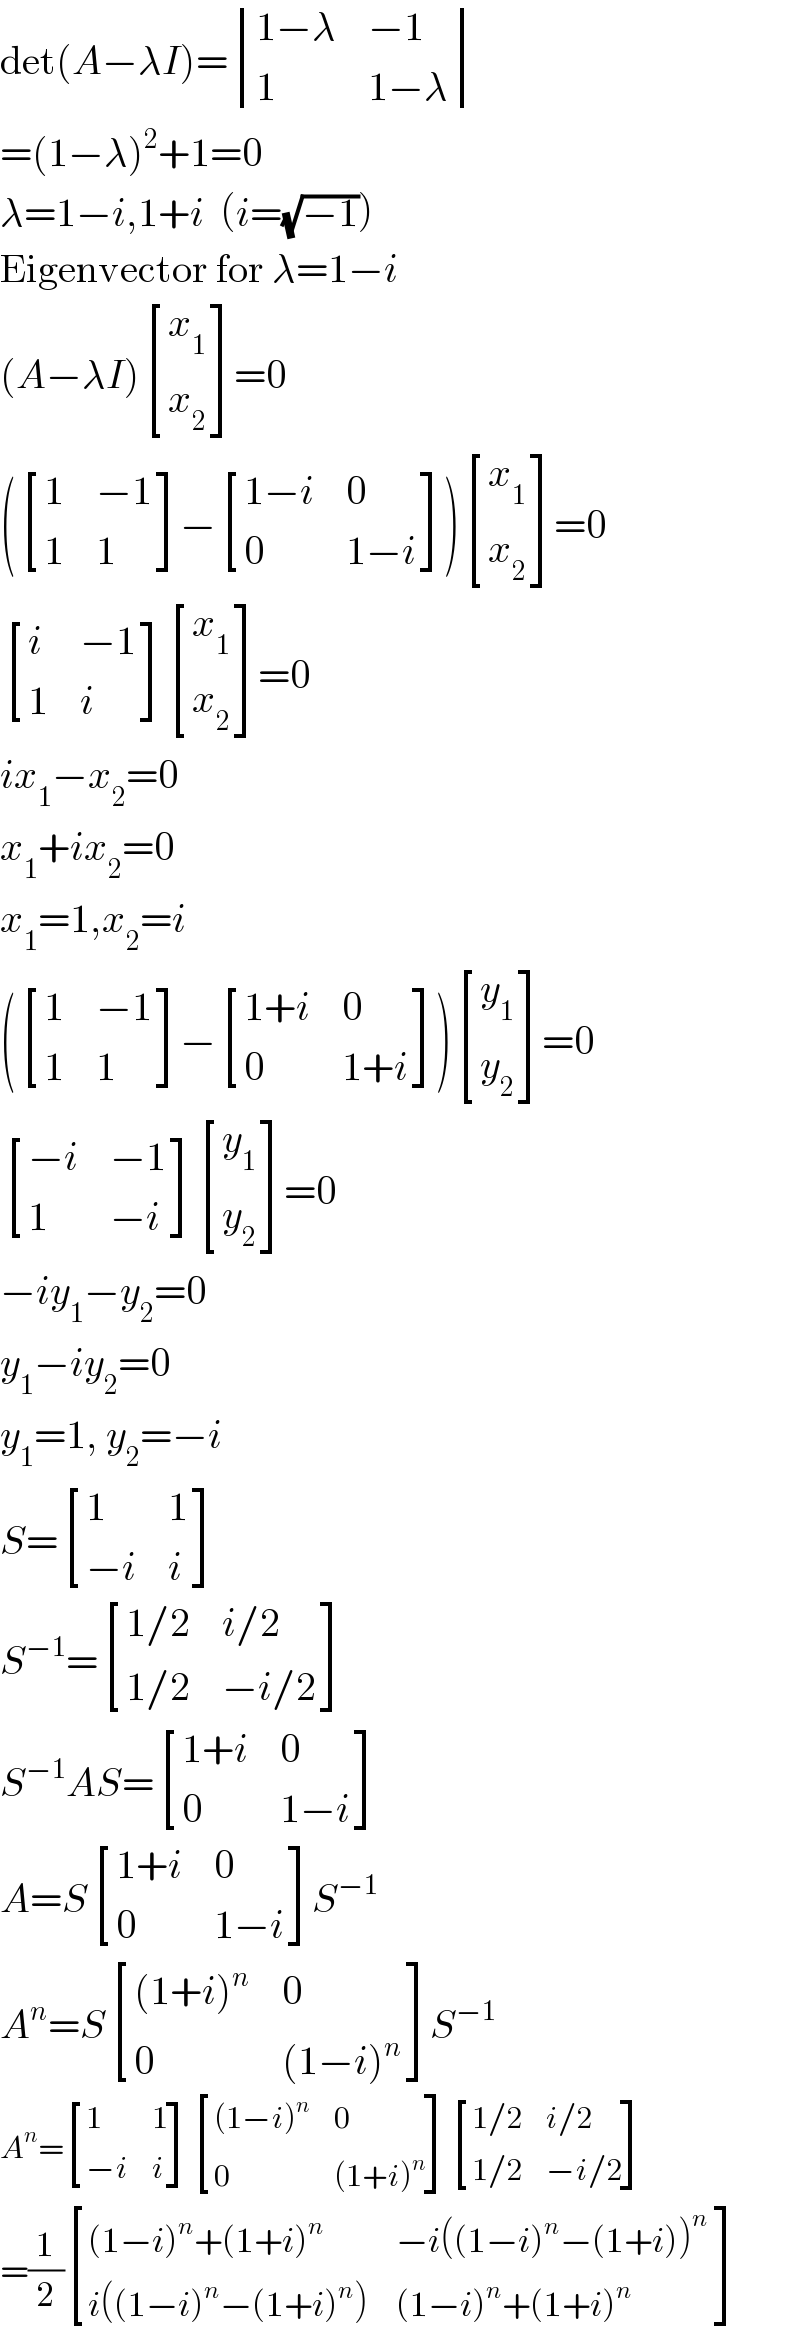 det(A−λI)= determinant (((1−λ),(−1)),(1,(1−λ)))  =(1−λ)^2 +1=0  λ=1−i,1+i  (i=(√(−1)))  Eigenvector for λ=1−i  (A−λI) [(x_1 ),(x_2 ) ]=0  ( [(1,(−1)),(1,1) ]− [((1−i),0),(0,(1−i)) ]) [(x_1 ),(x_2 ) ]=0   [(i,(−1)),(1,i) ] [(x_1 ),(x_2 ) ]=0  ix_1 −x_2 =0  x_1 +ix_2 =0  x_1 =1,x_2 =i  ( [(1,(−1)),(1,1) ]− [((1+i),0),(0,(1+i)) ]) [(y_1 ),(y_2 ) ]=0   [((−i),(−1)),(1,(−i)) ] [(y_1 ),(y_2 ) ]=0  −iy_1 −y_2 =0  y_1 −iy_2 =0  y_1 =1, y_2 =−i  S= [(1,1),((−i),i) ]  S^(−1) = [((1/2),(i/2)),((1/2),(−i/2)) ]  S^(−1) AS= [((1+i),0),(0,(1−i)) ]  A=S [((1+i),0),(0,(1−i)) ]S^(−1)   A^n =S [(((1+i)^n ),0),(0,((1−i)^n )) ]S^(−1)   A^n = [(1,1),((−i),i) ] [(((1−i)^n ),0),(0,((1+i)^n )) ] [((1/2),(i/2)),((1/2),(−i/2)) ]  =(1/2) [(((1−i)^n +(1+i)^n ),(−i((1−i)^n −(1+i))^n  )),((i((1−i)^n −(1+i)^n )),((1−i)^n +(1+i)^n )) ]  